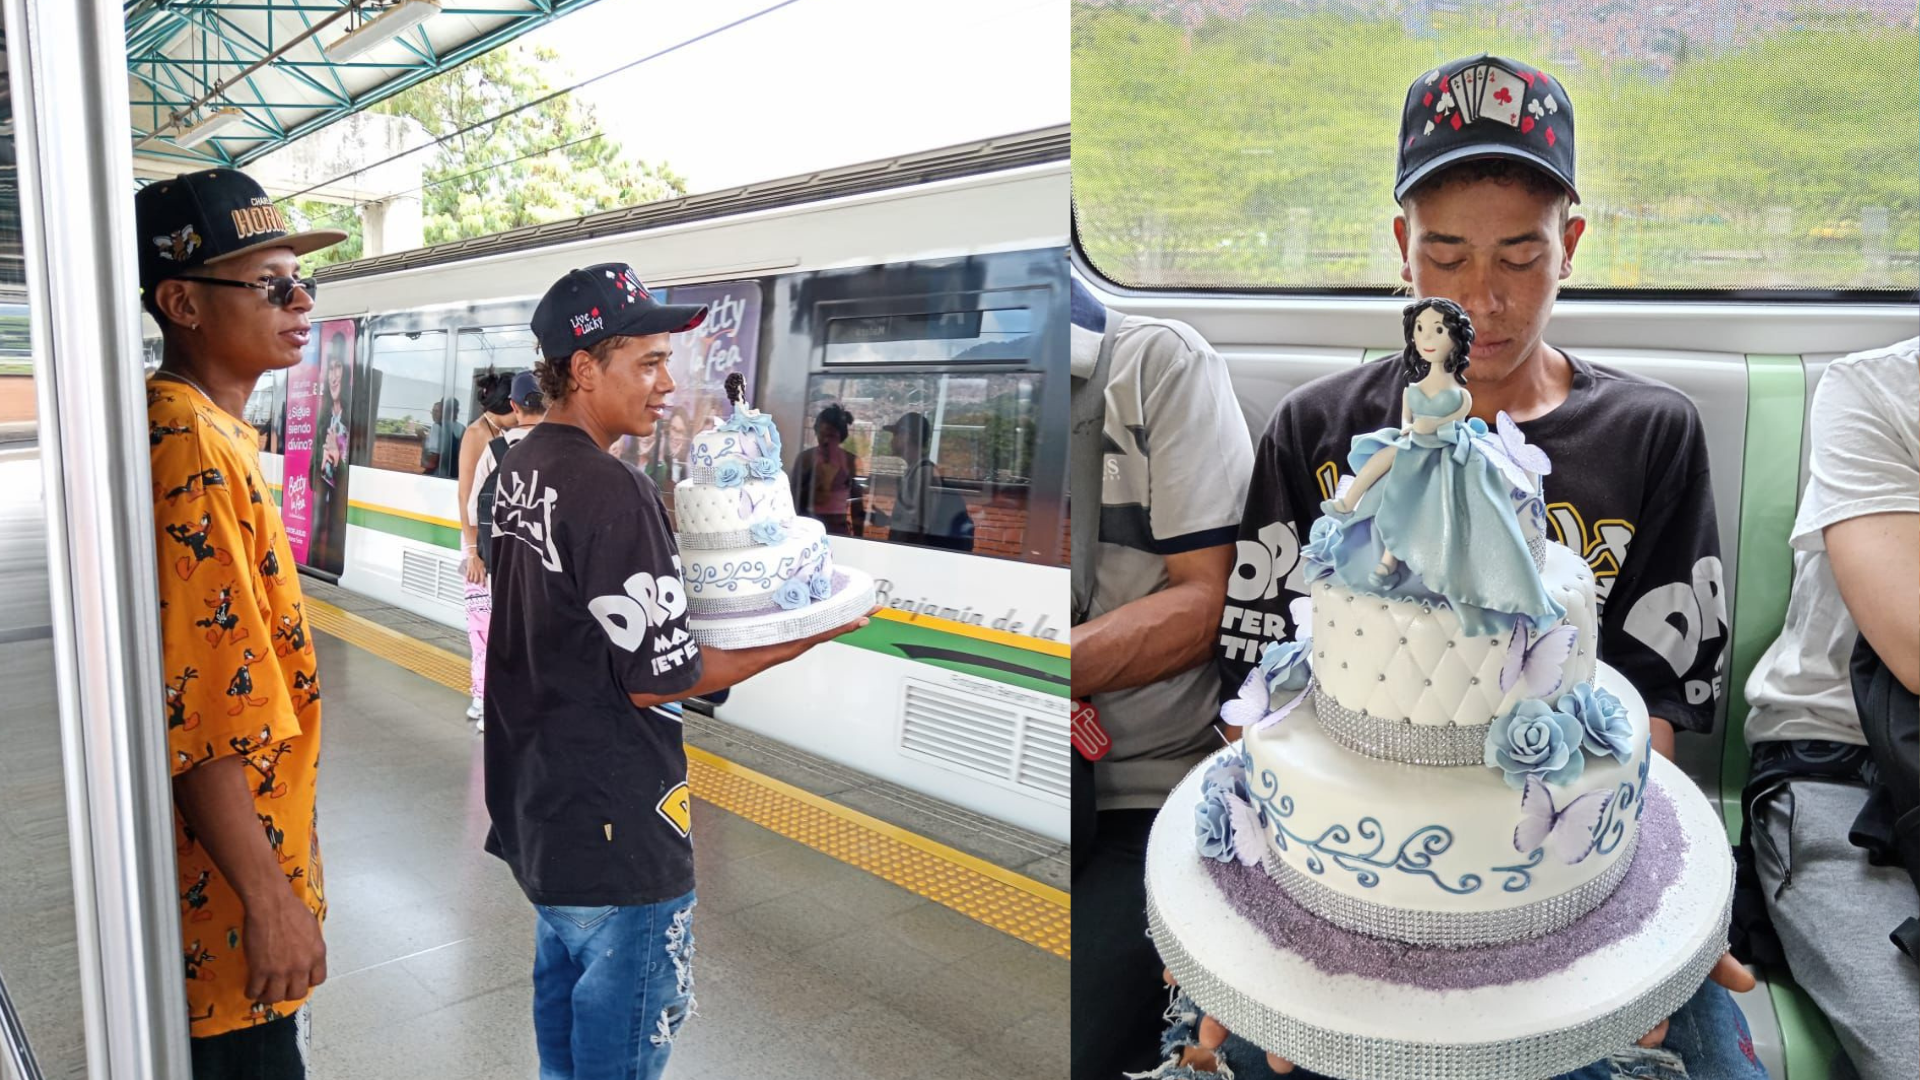 El diseño de la torta combina rosas y colores en tonos pasteles azul y morado. Fotos: Metro de Medellín